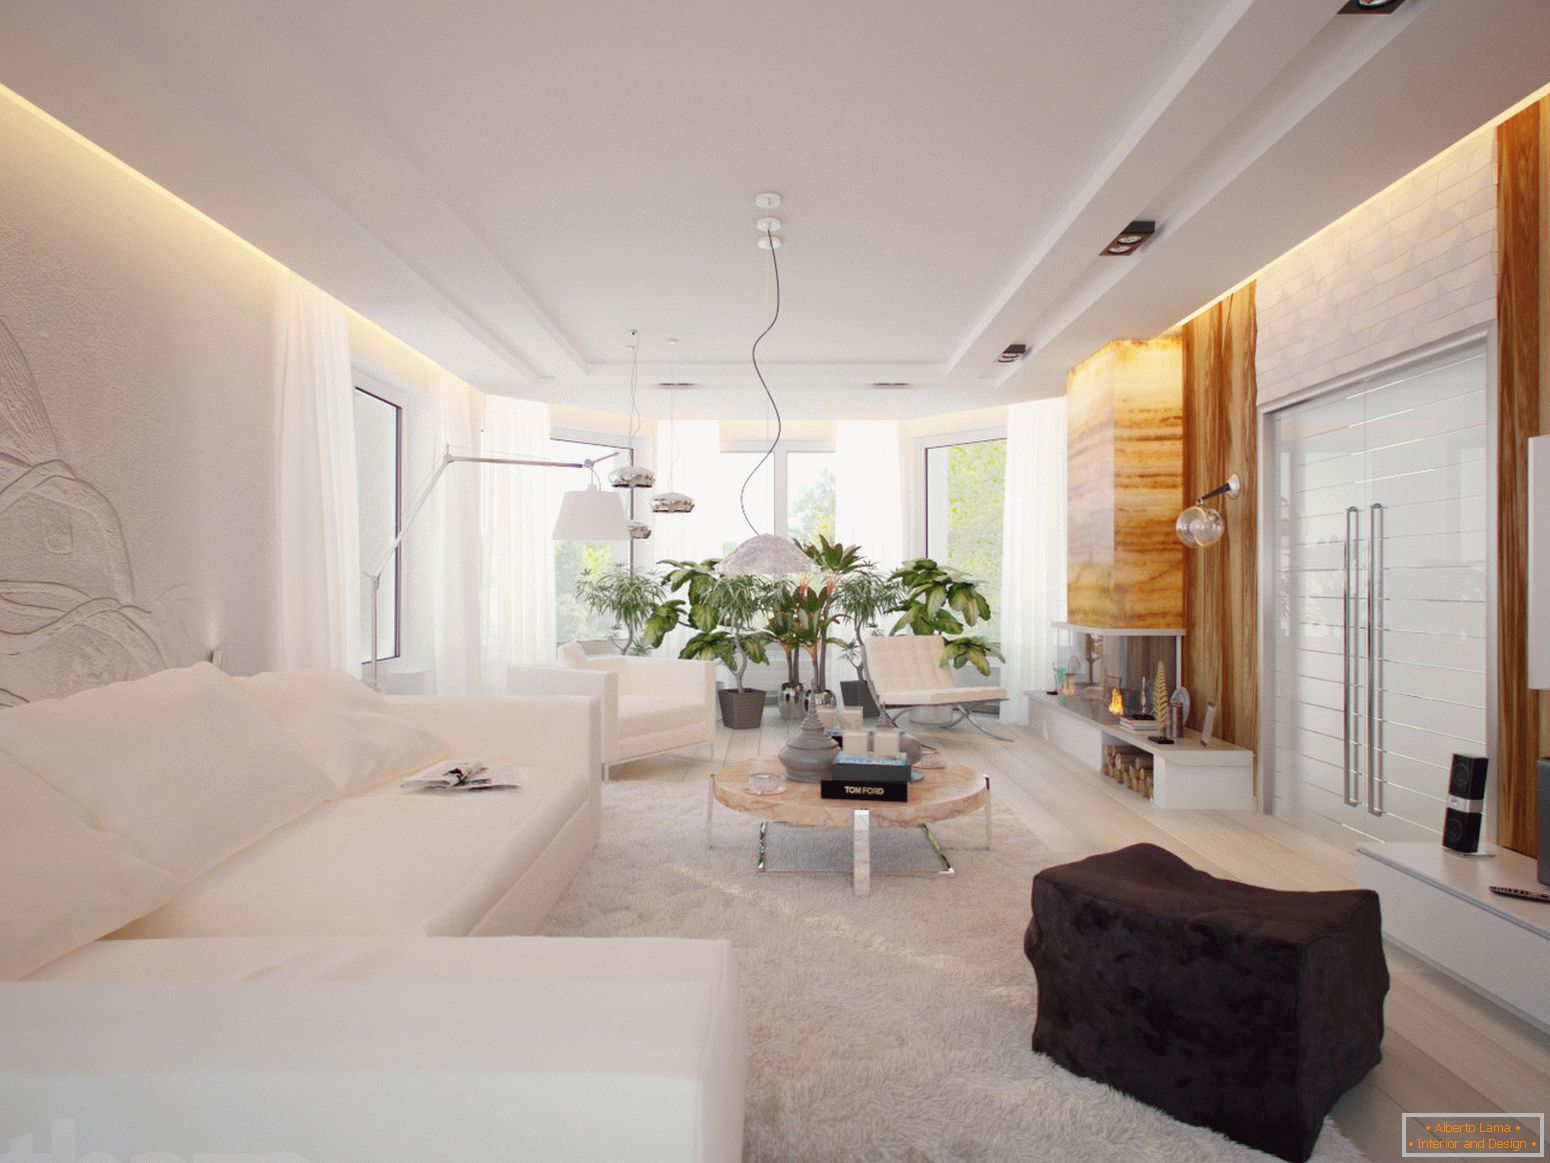 Una habitación espaciosa y luminosa en el estilo minimalista es un excelente ejemplo de mobiliario seleccionado correctamente.